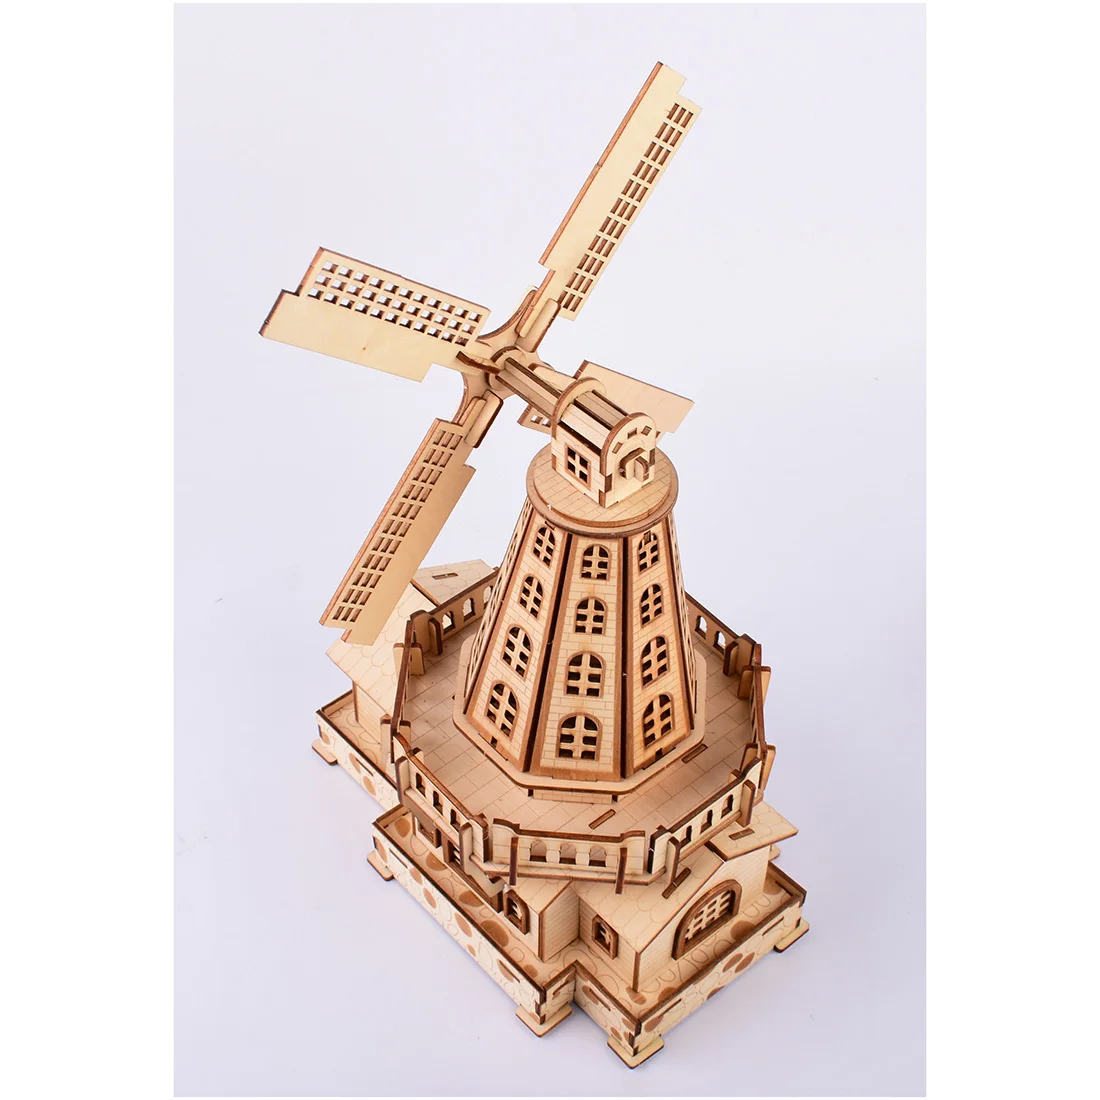 2019 новая высокоточная лазерная резка головоломка 3D деревянная модель-пазл строительные наборы-голландская ветряная мельница